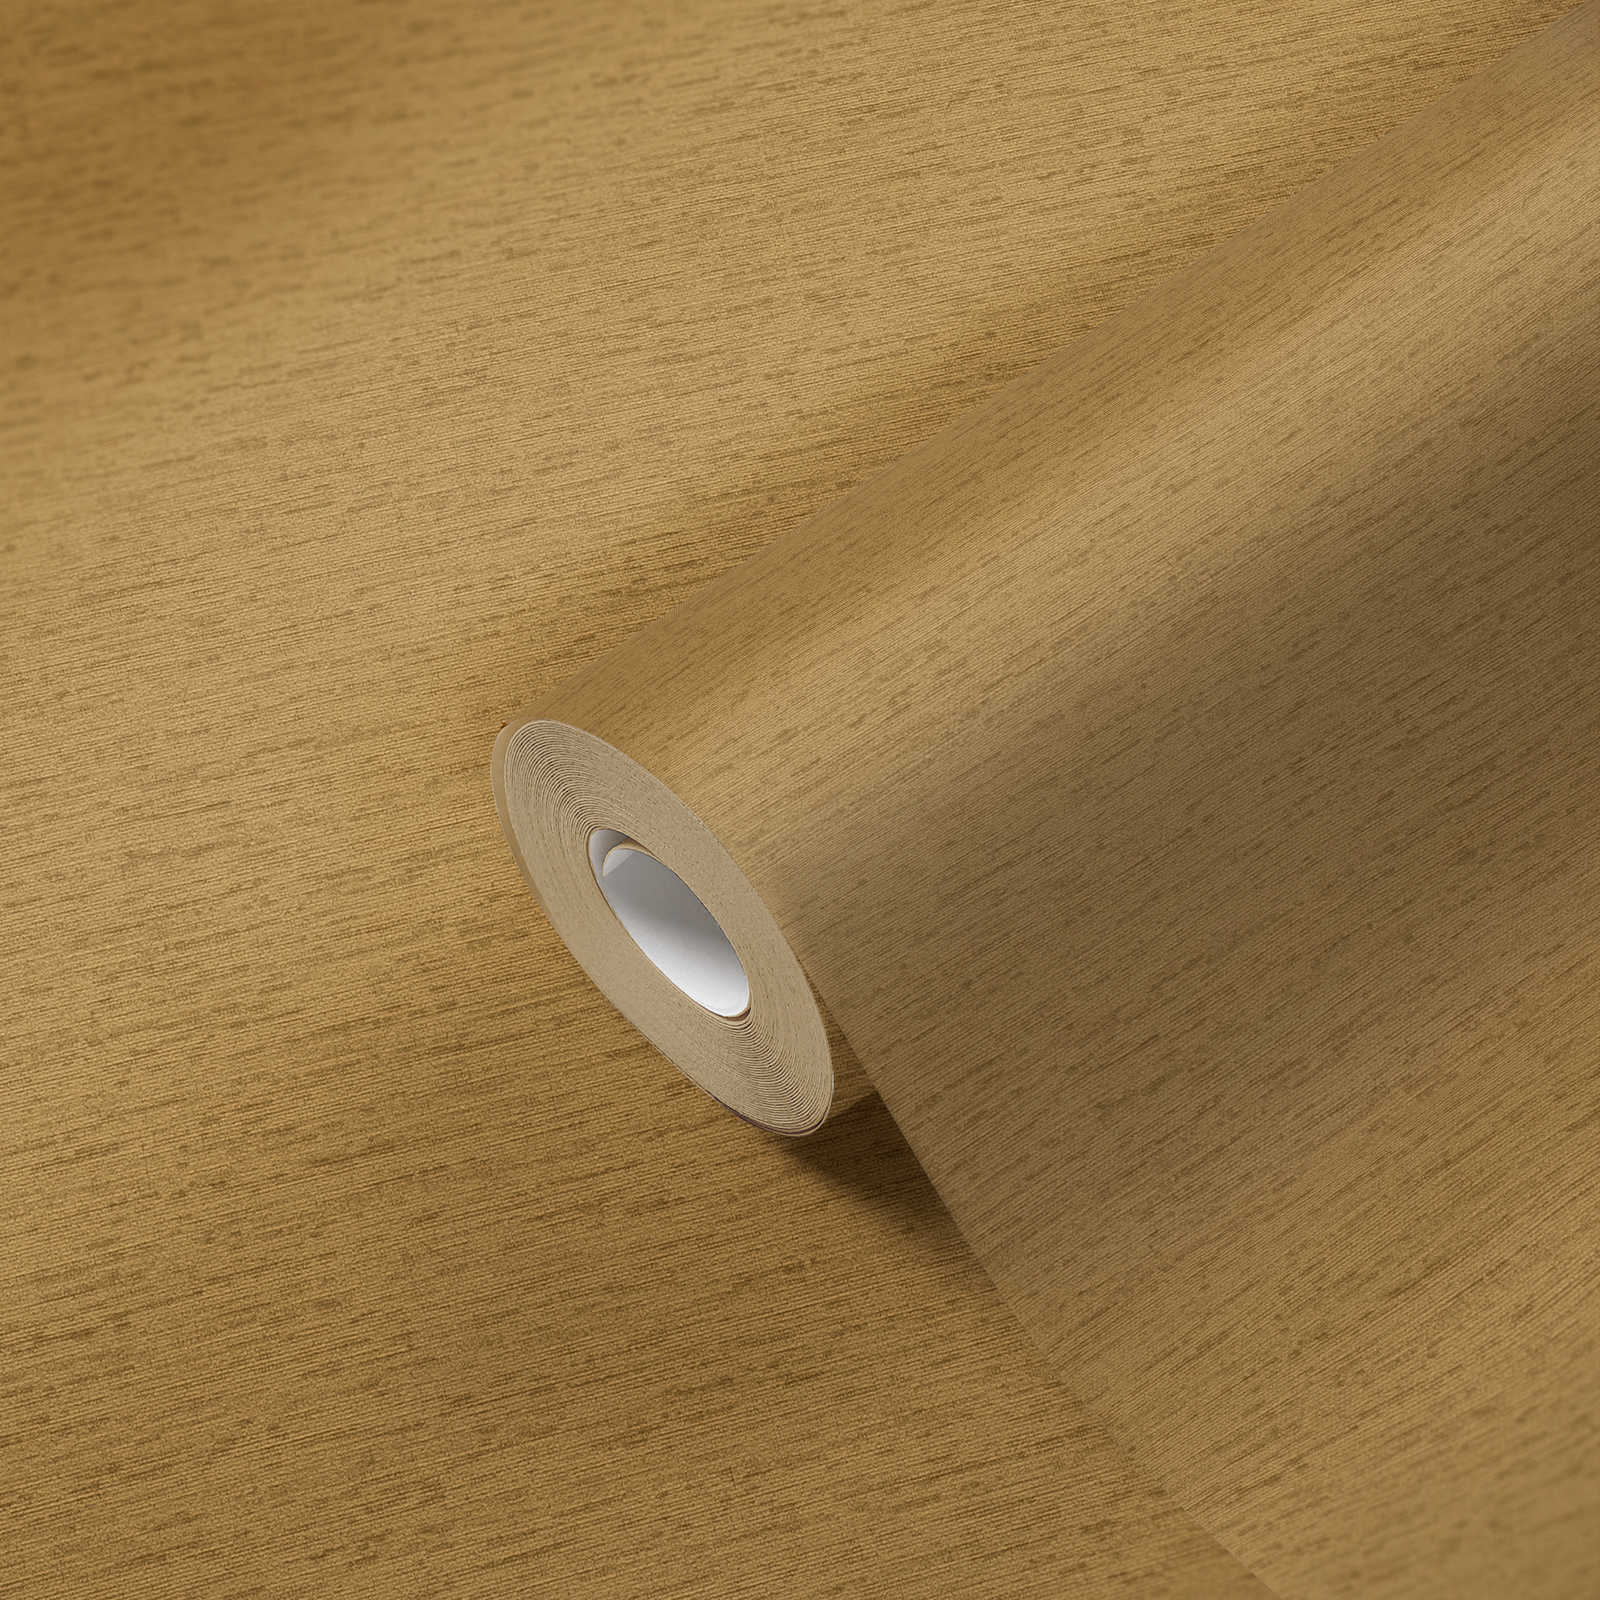             Einfarbige Tapete in Textil-Optik mit leichter Struktur, matt – Goldbraun, Gelb
        